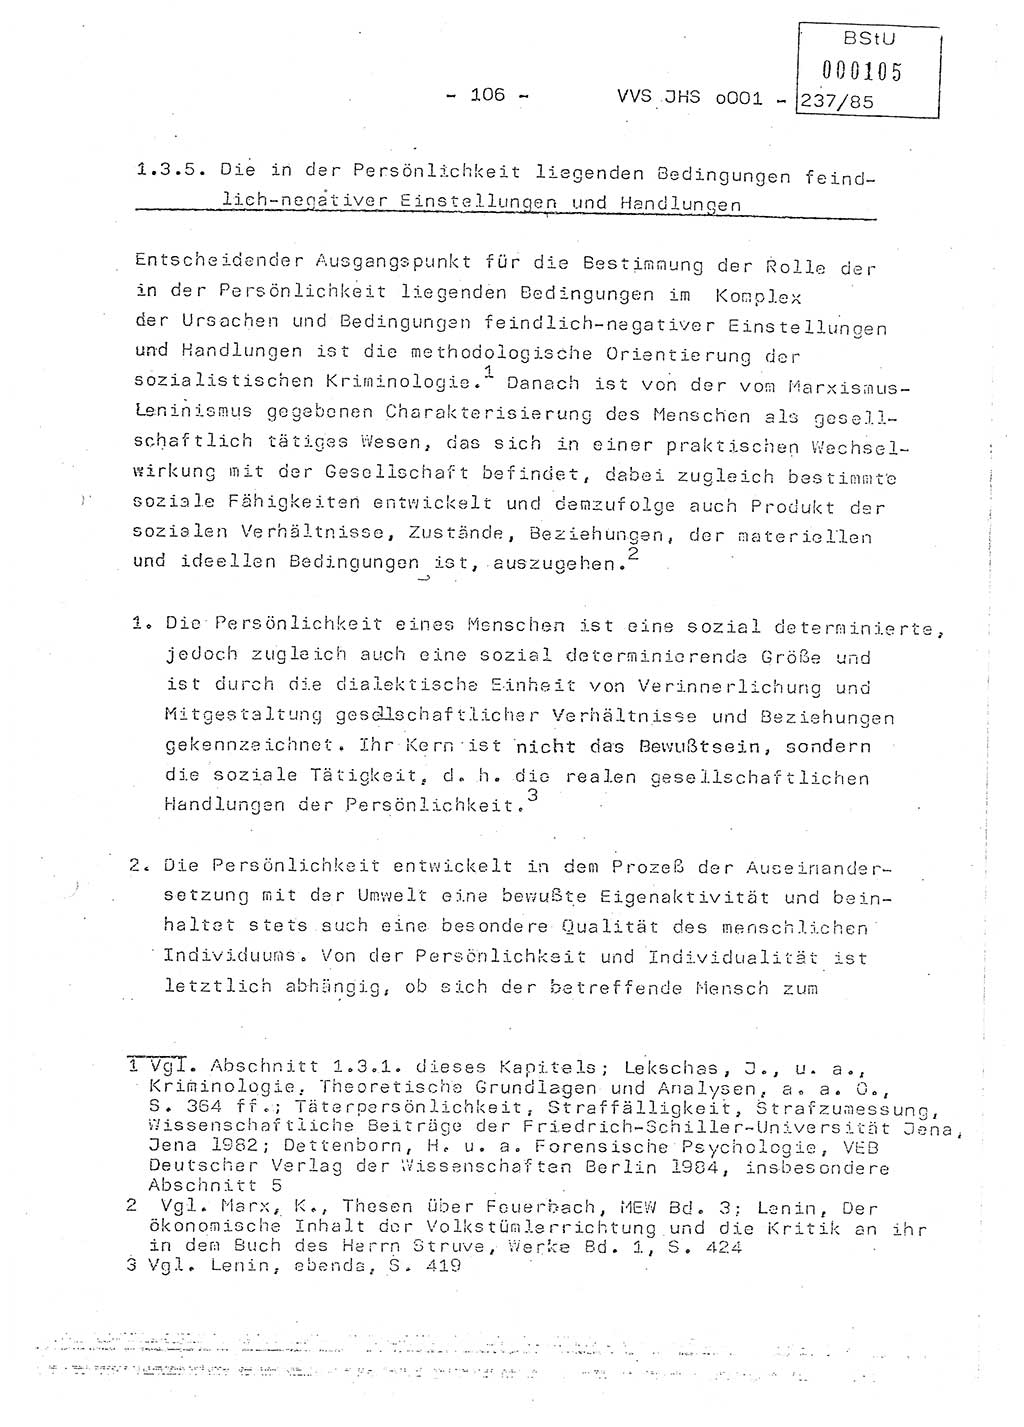 Dissertation Oberstleutnant Peter Jakulski (JHS), Oberstleutnat Christian Rudolph (HA Ⅸ), Major Horst Böttger (ZMD), Major Wolfgang Grüneberg (JHS), Major Albert Meutsch (JHS), Ministerium für Staatssicherheit (MfS) [Deutsche Demokratische Republik (DDR)], Juristische Hochschule (JHS), Vertrauliche Verschlußsache (VVS) o001-237/85, Potsdam 1985, Seite 106 (Diss. MfS DDR JHS VVS o001-237/85 1985, S. 106)